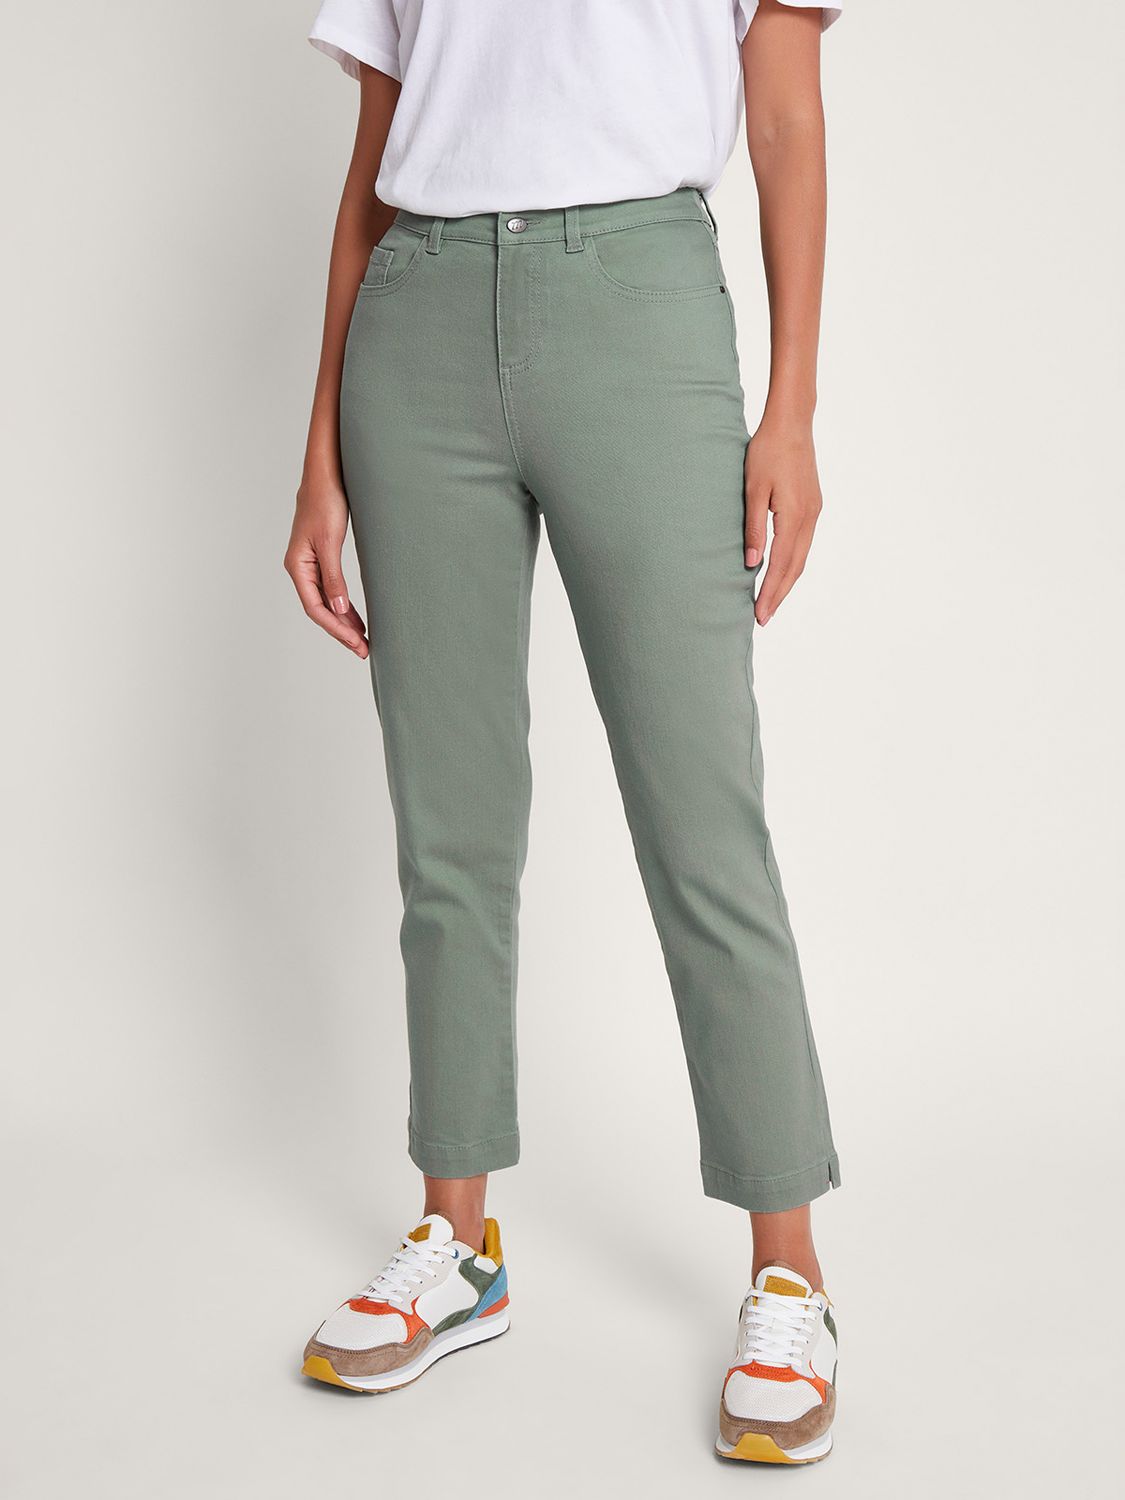 Women's Green Jeans